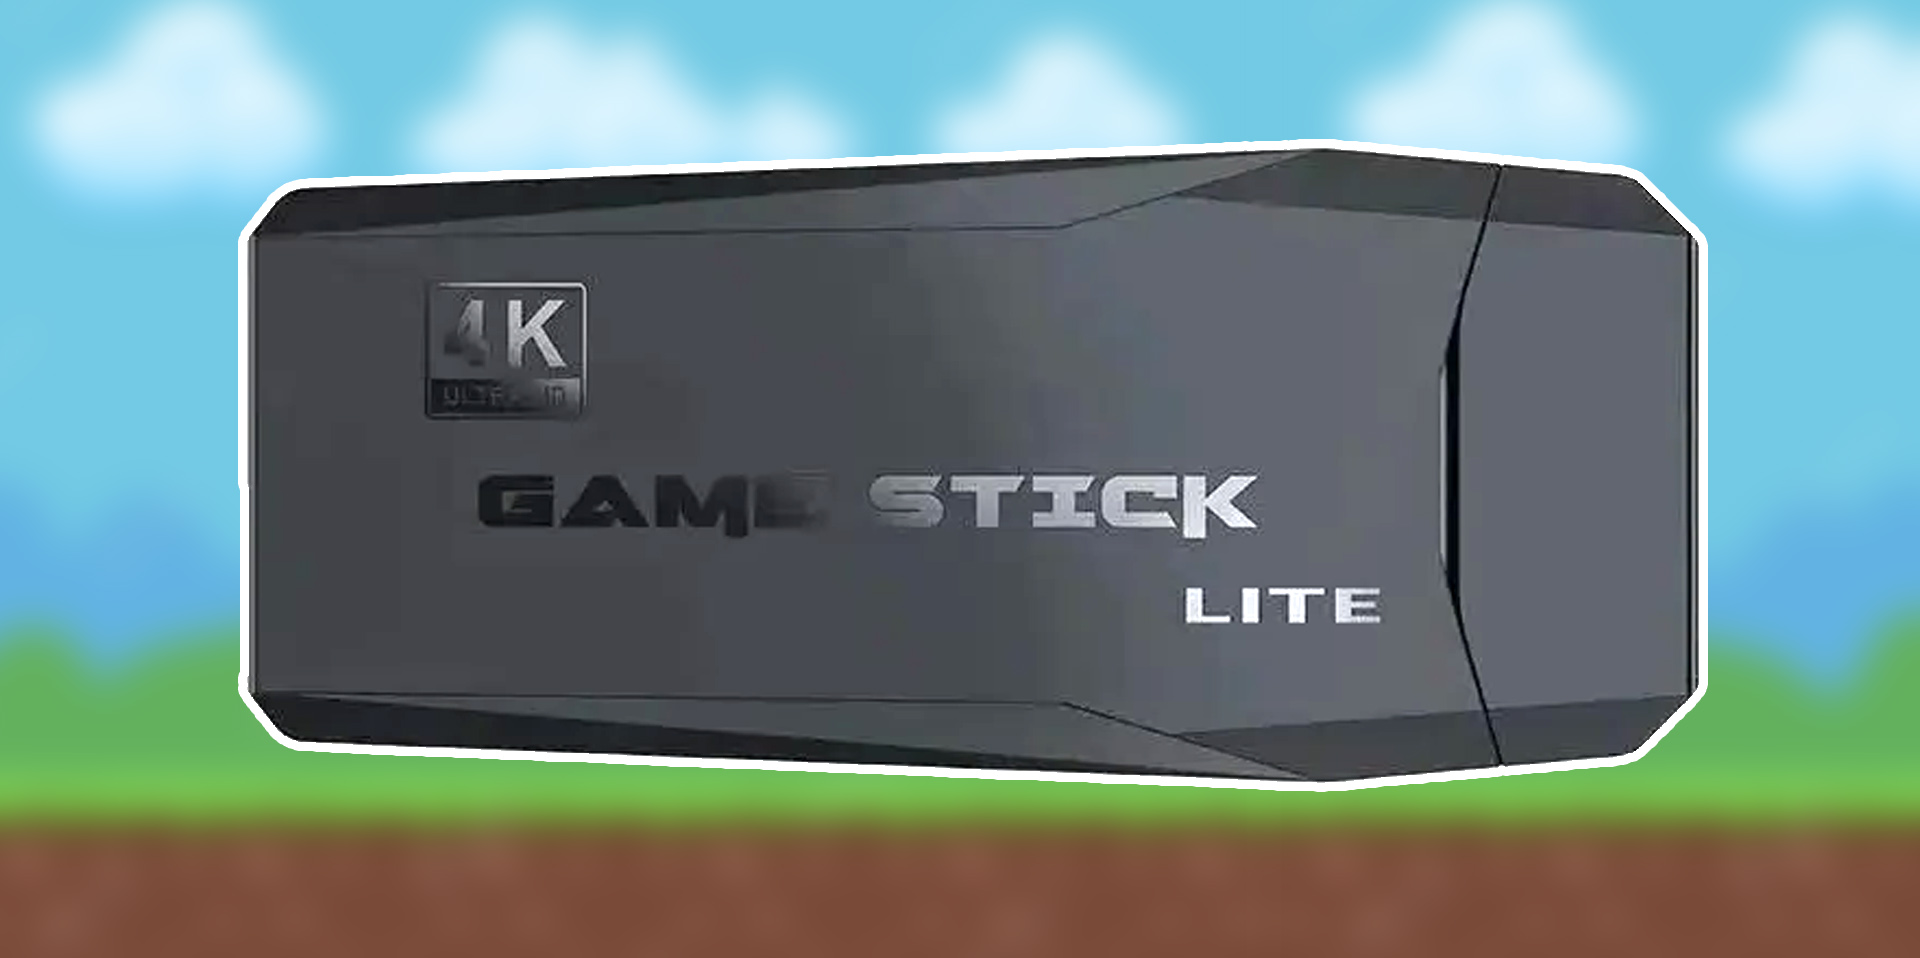 Game stick 4K lite: 15 тысяч игр из прошлого